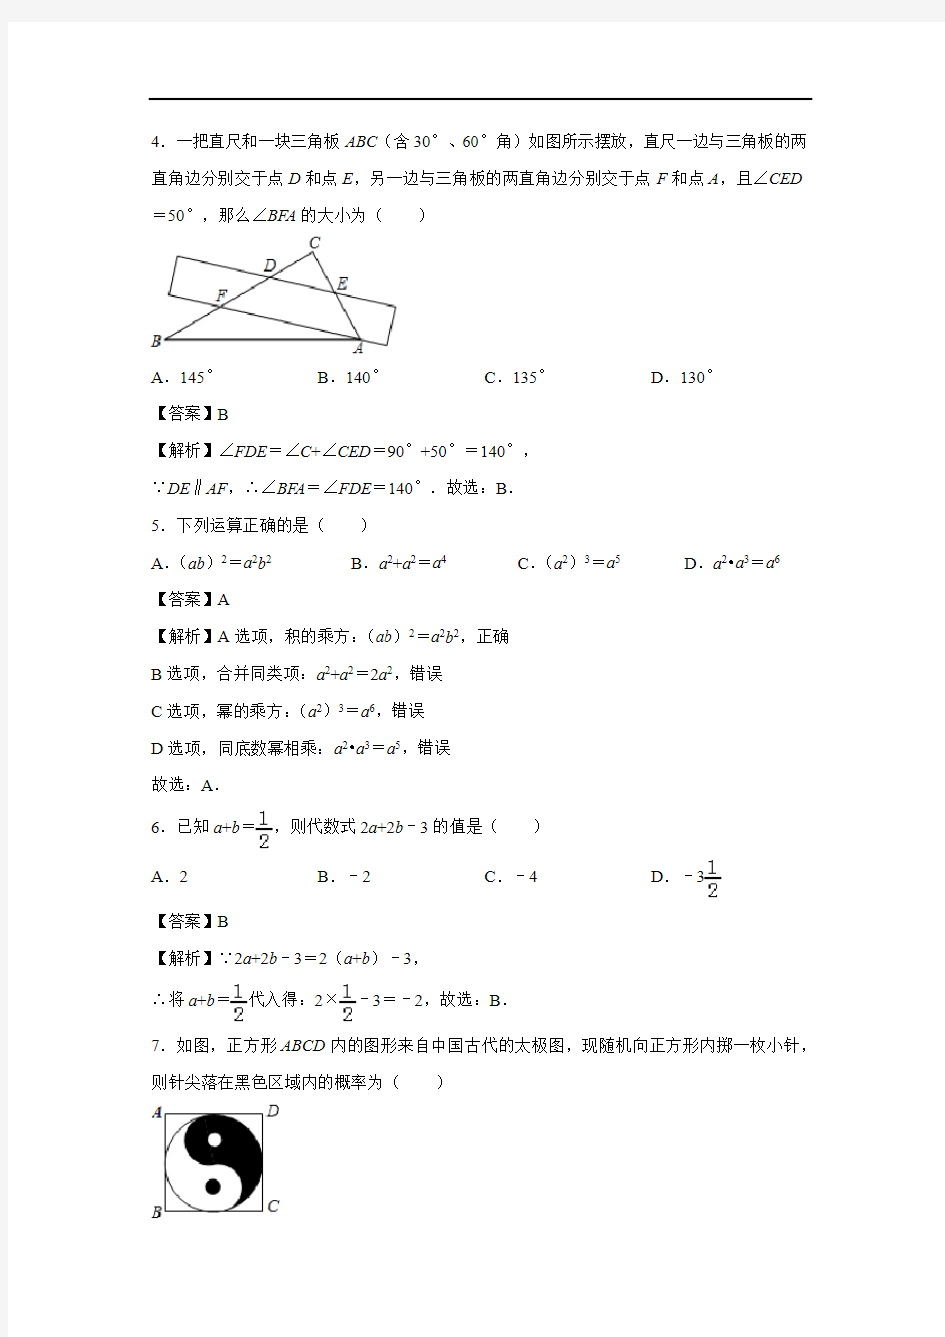 【数学】2019甘肃省天水市中考真题(解析版)